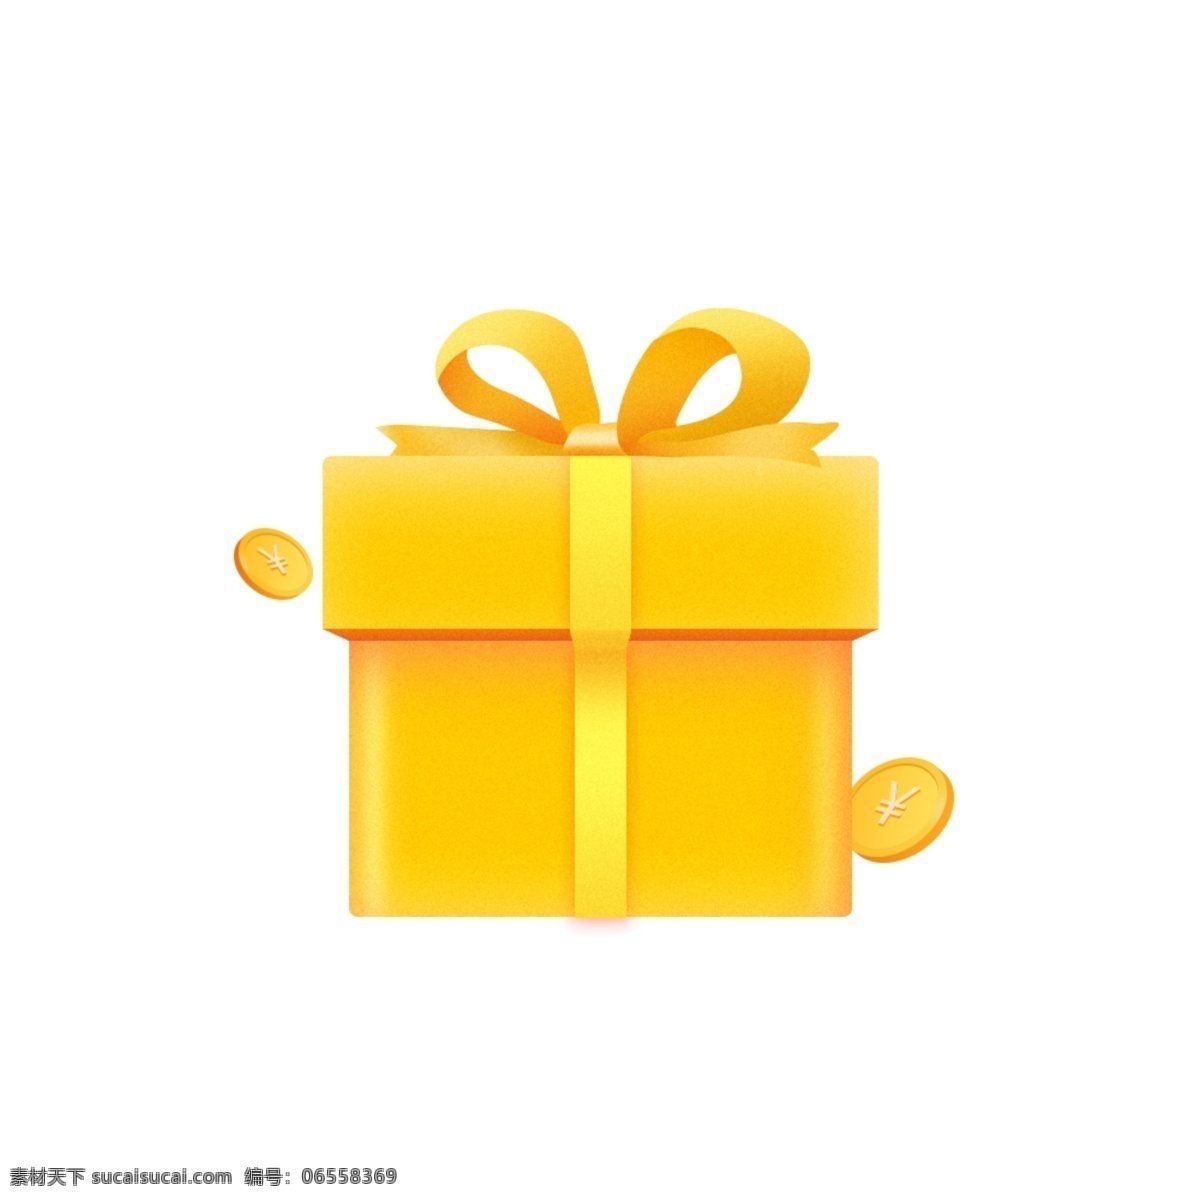 礼物 优惠 庆典 金币 礼盒 金色 黄色 金黄色 金融 活动 电商 礼品 黄金 丝带 盒子 图标 理财 经济 赠送